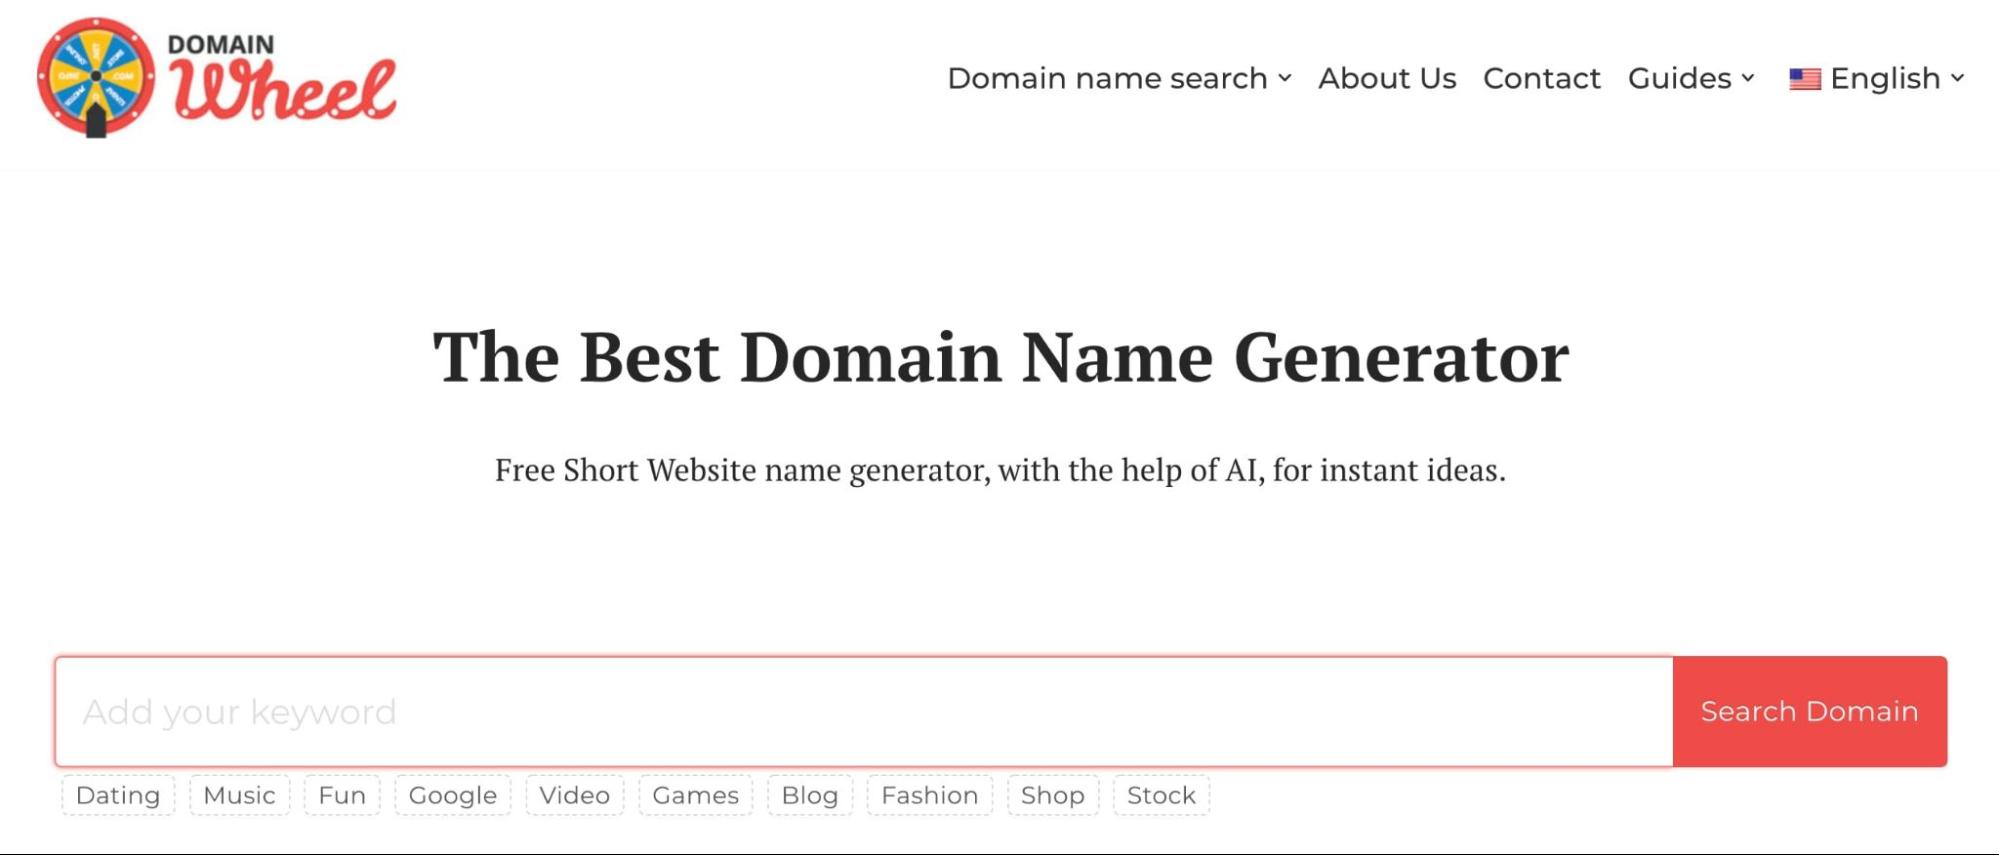 DomainWheel domain name generator